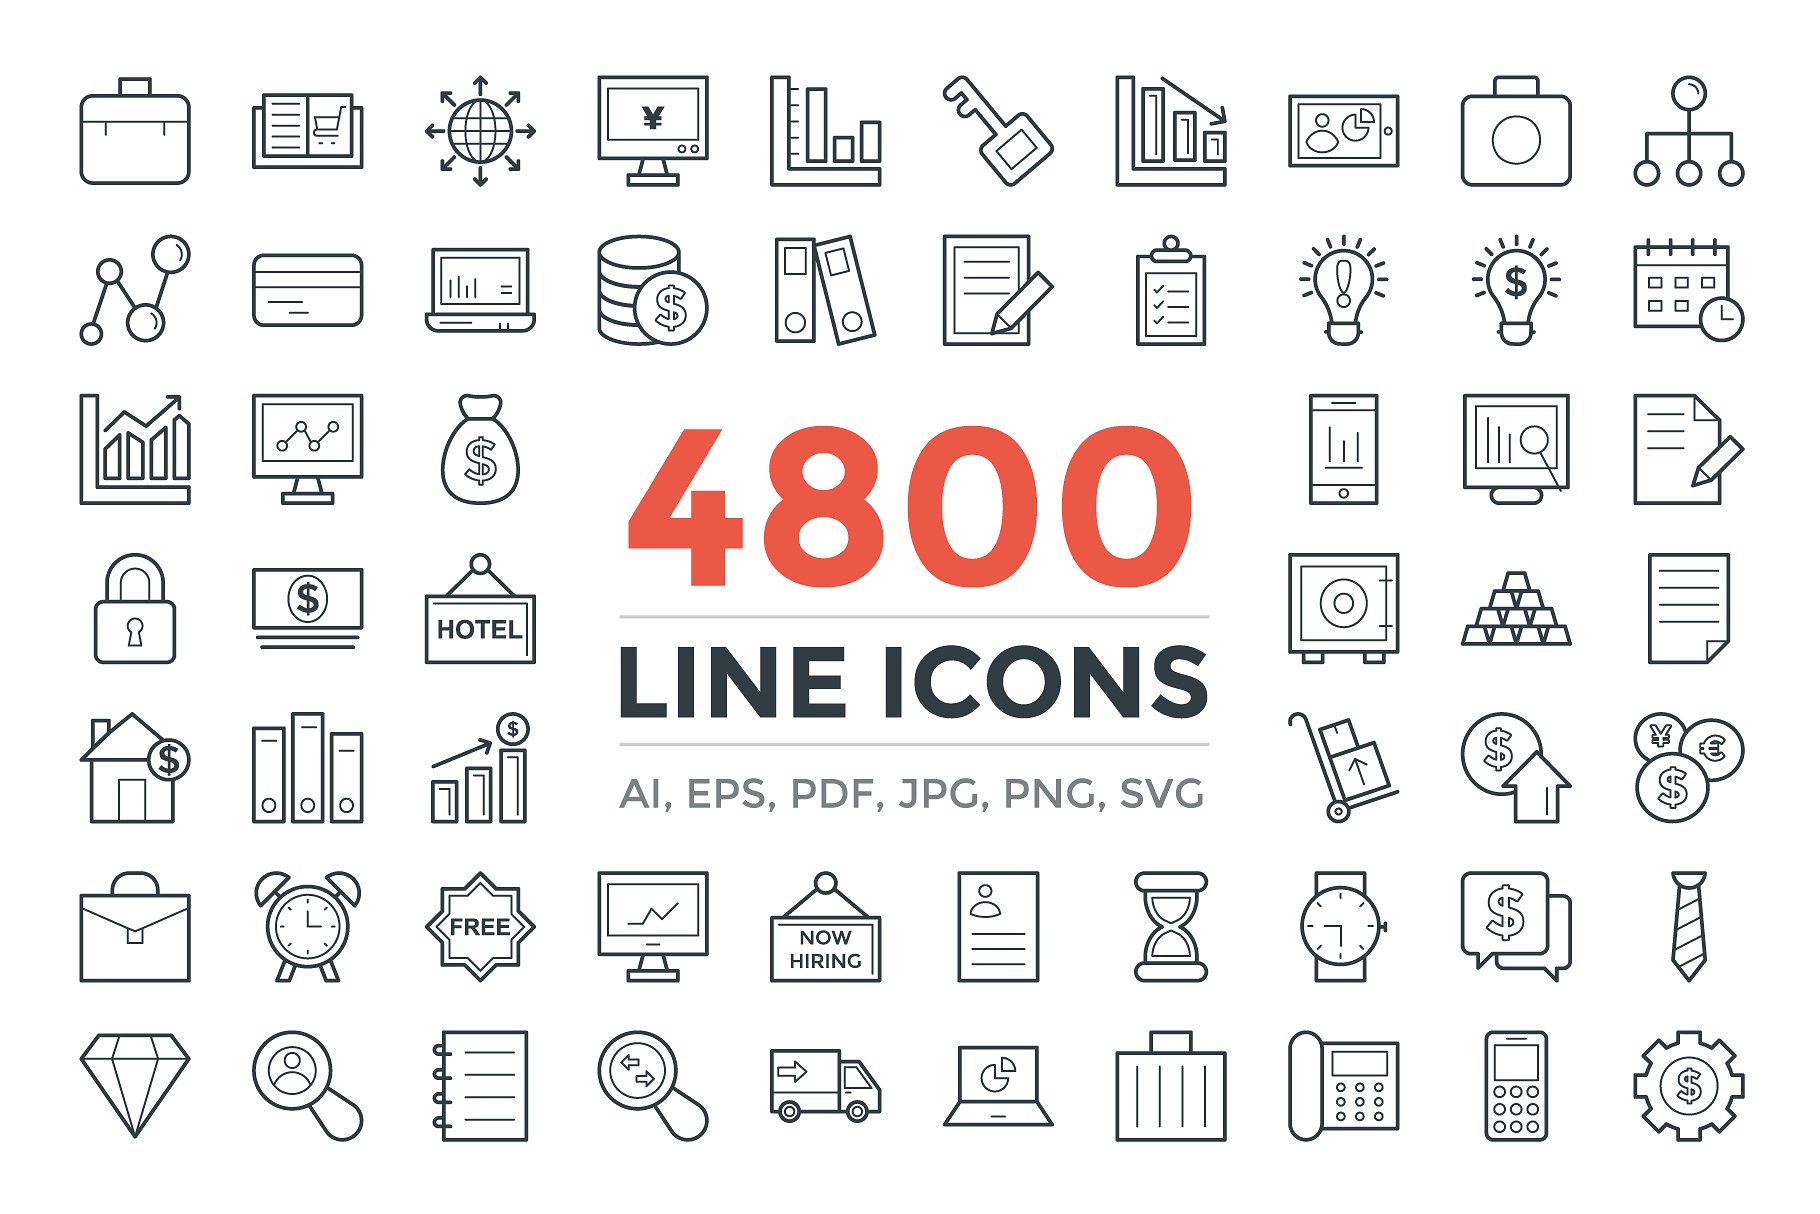 高品质的线型图标下载 4800 Line Icons Pac